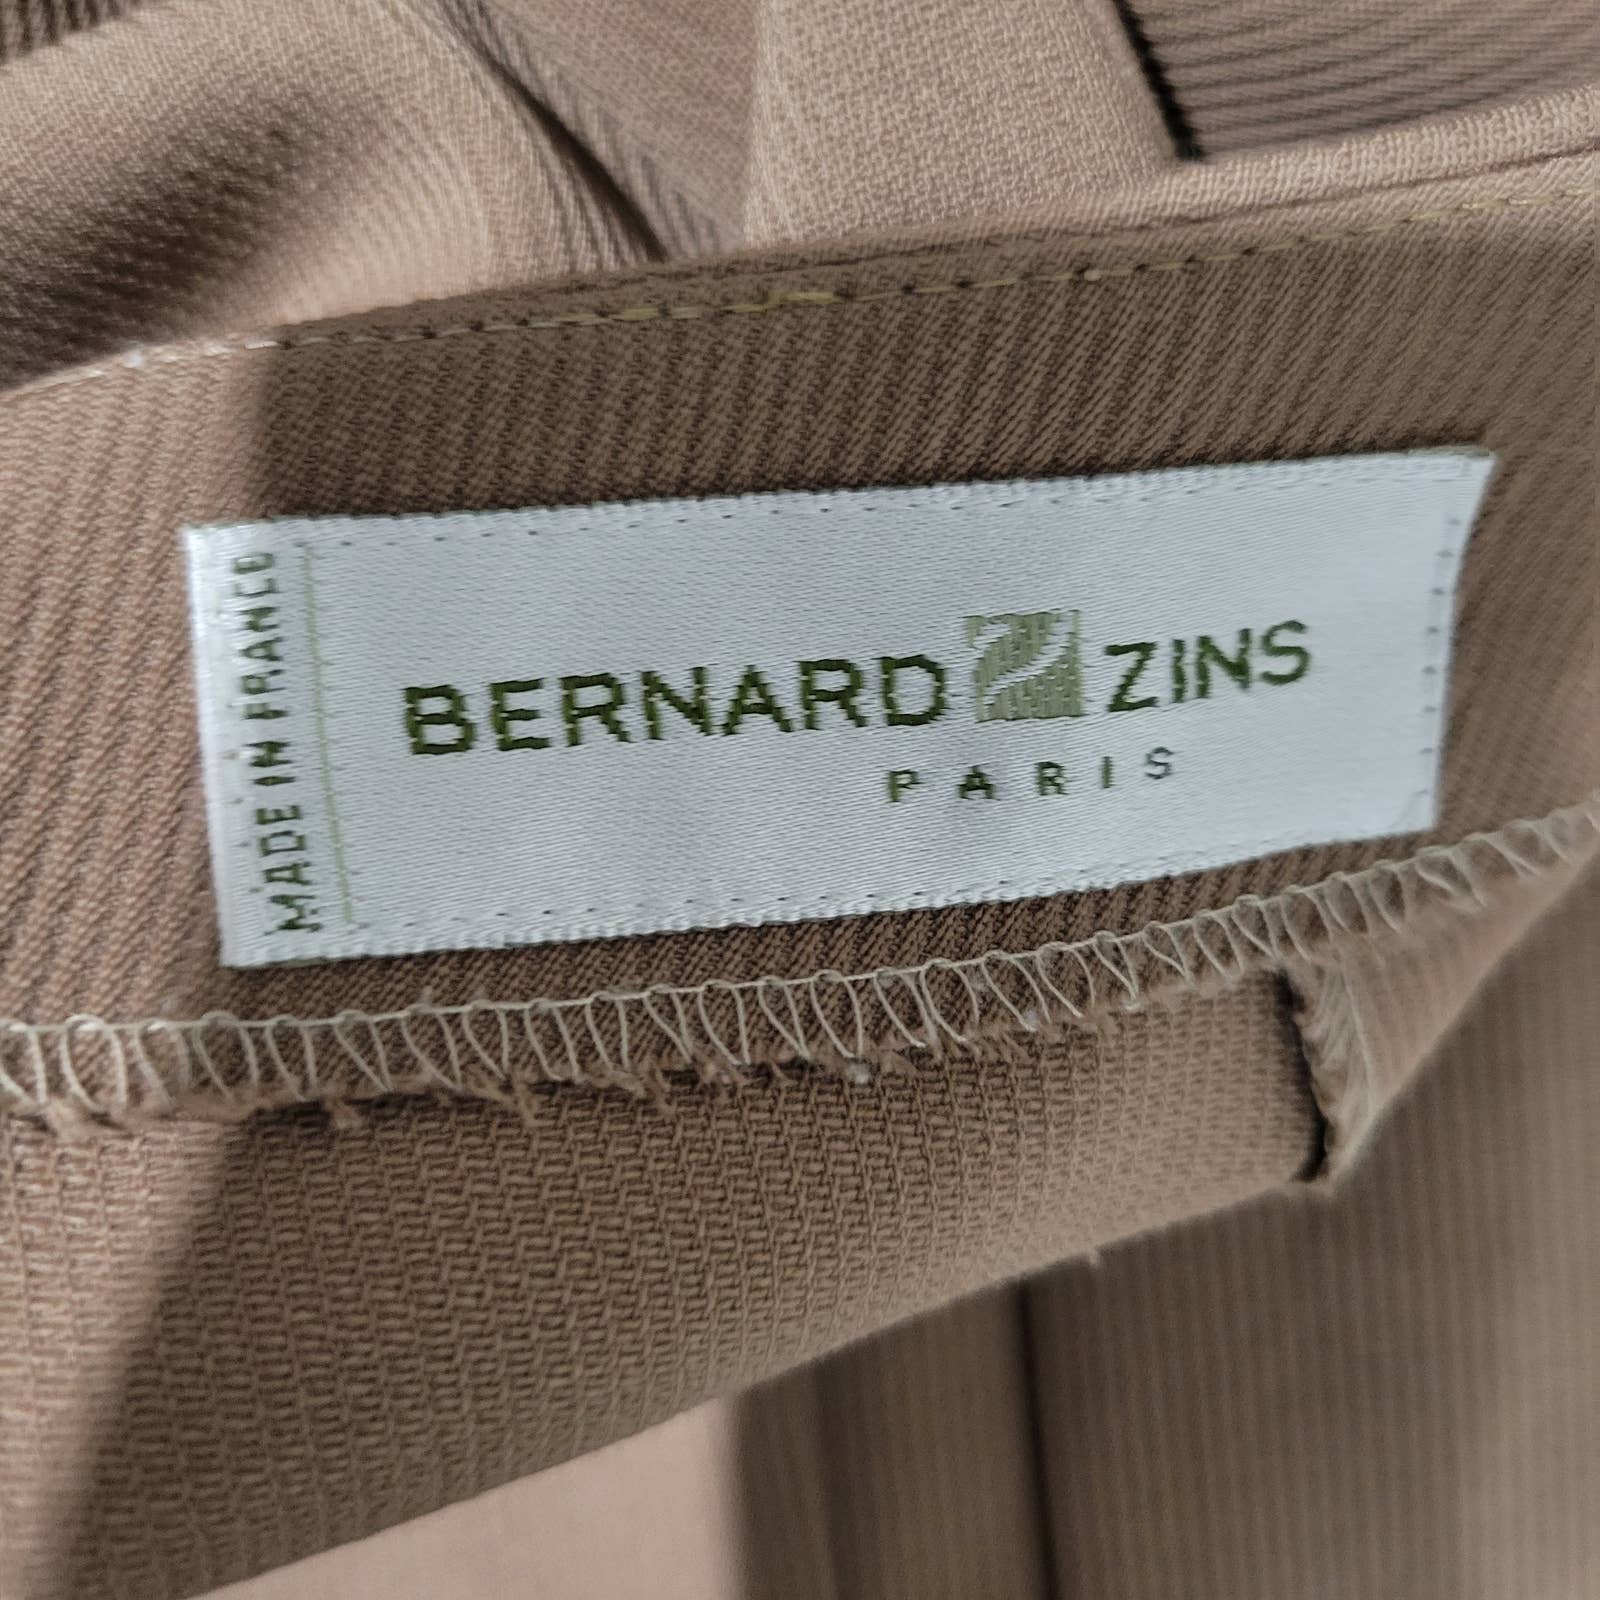 Bernard Zins Trousers Brown Tan Dress Pant High Waist Straight Flat Front Size 4